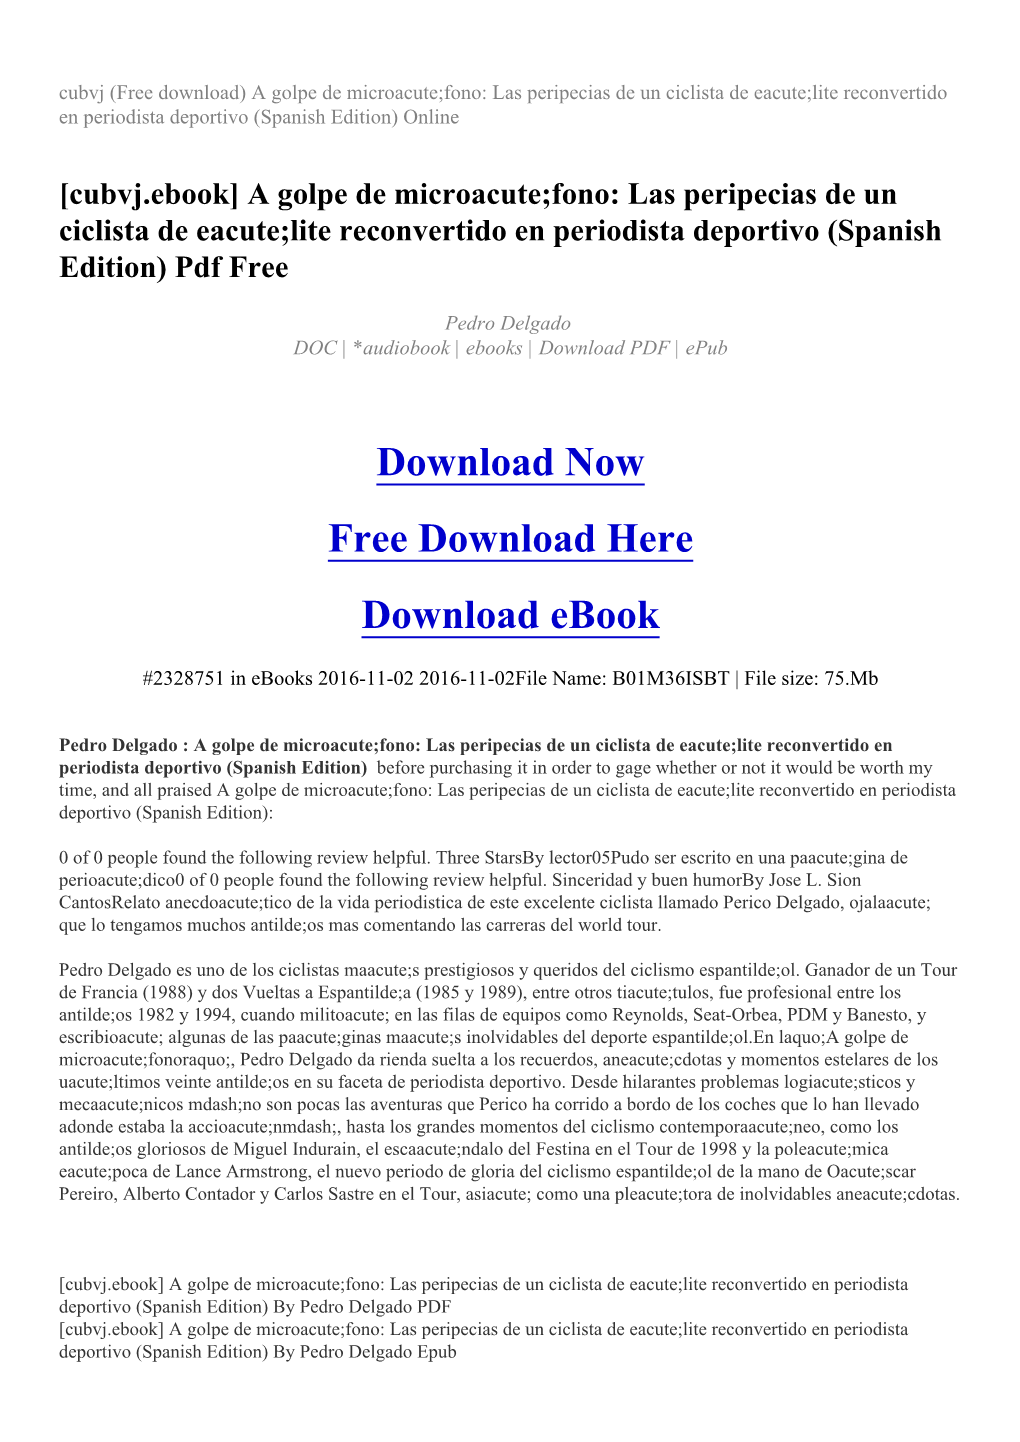 Las Peripecias De Un Ciclista De Eacute;Lite Reconvertido En Periodista Deportivo (Spanish Edition) Online